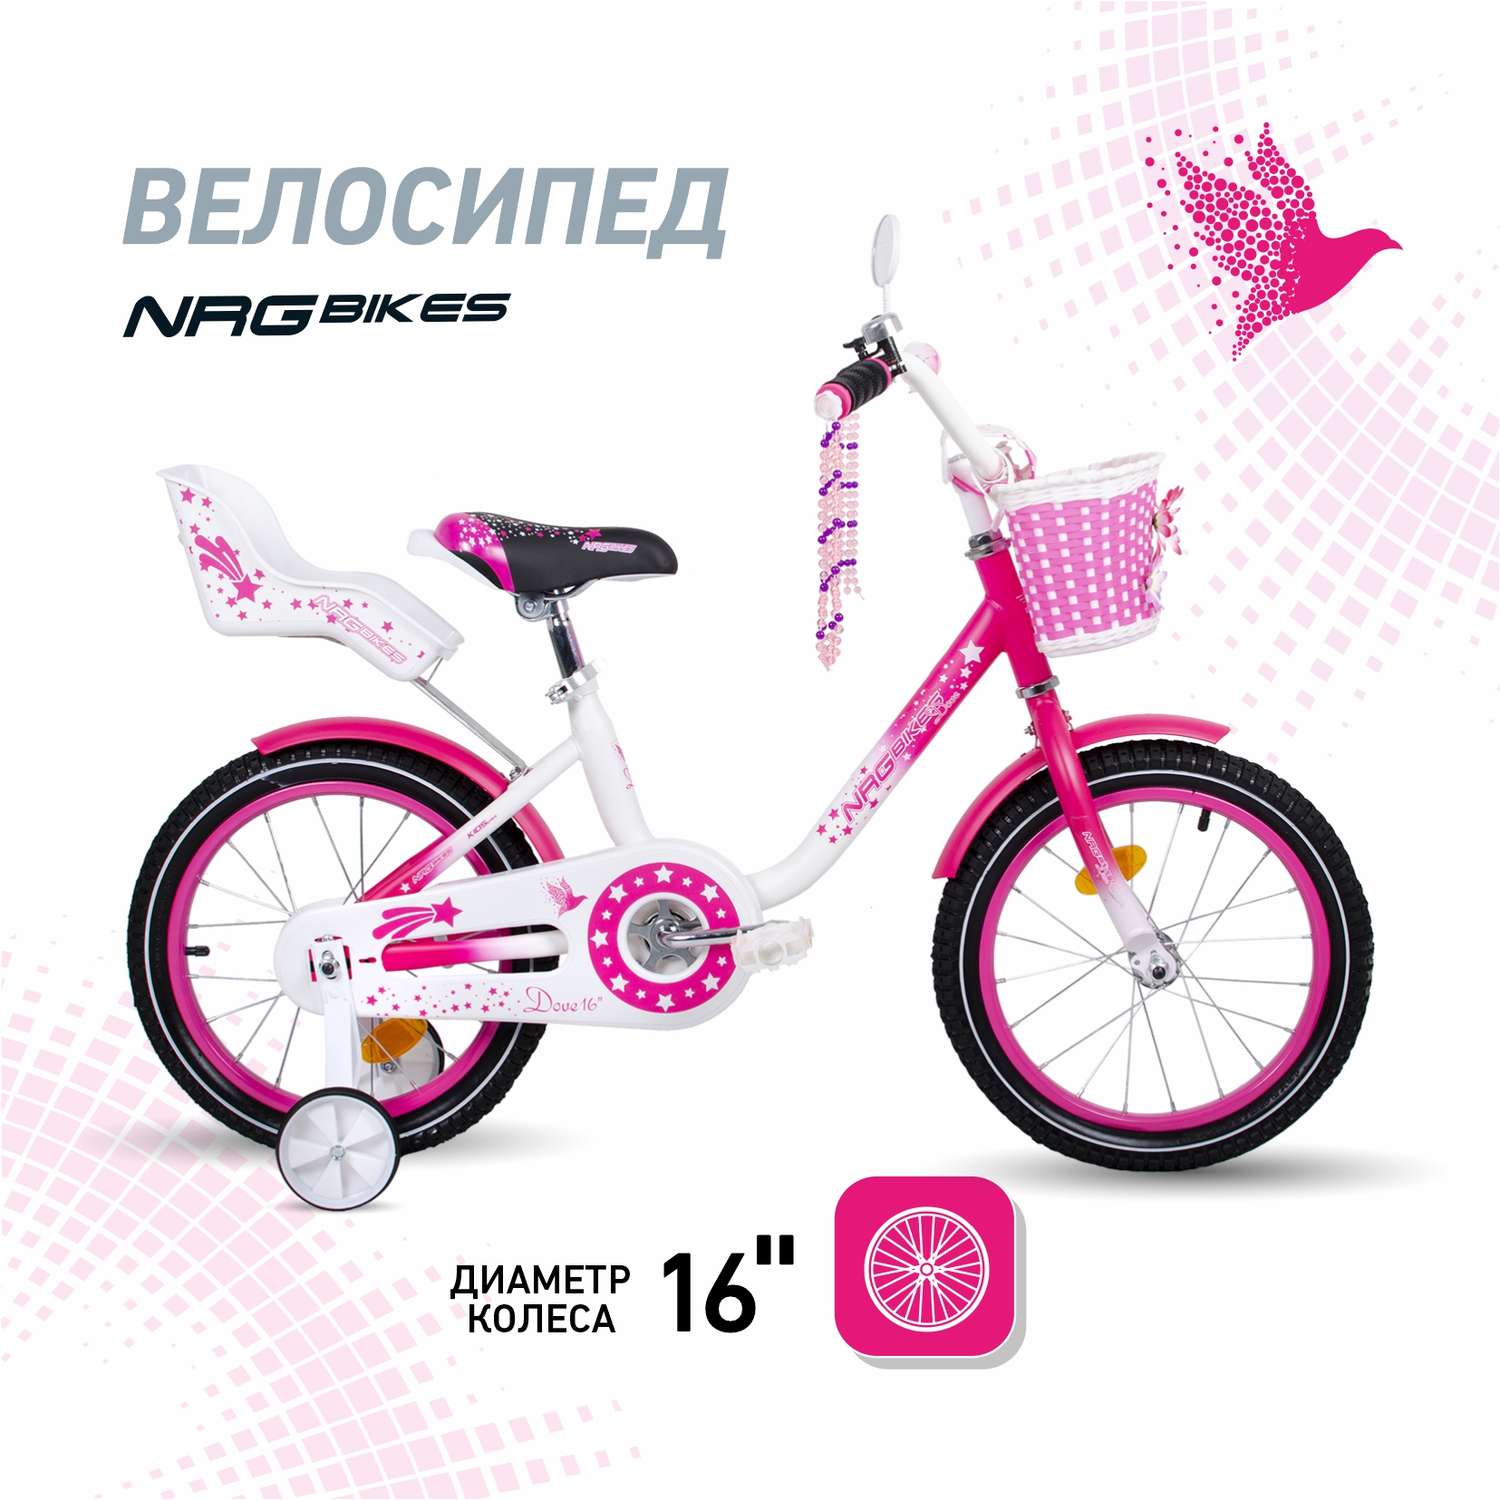 Велосипед NRG BIKES DOVE 16 white-pink - фото 1